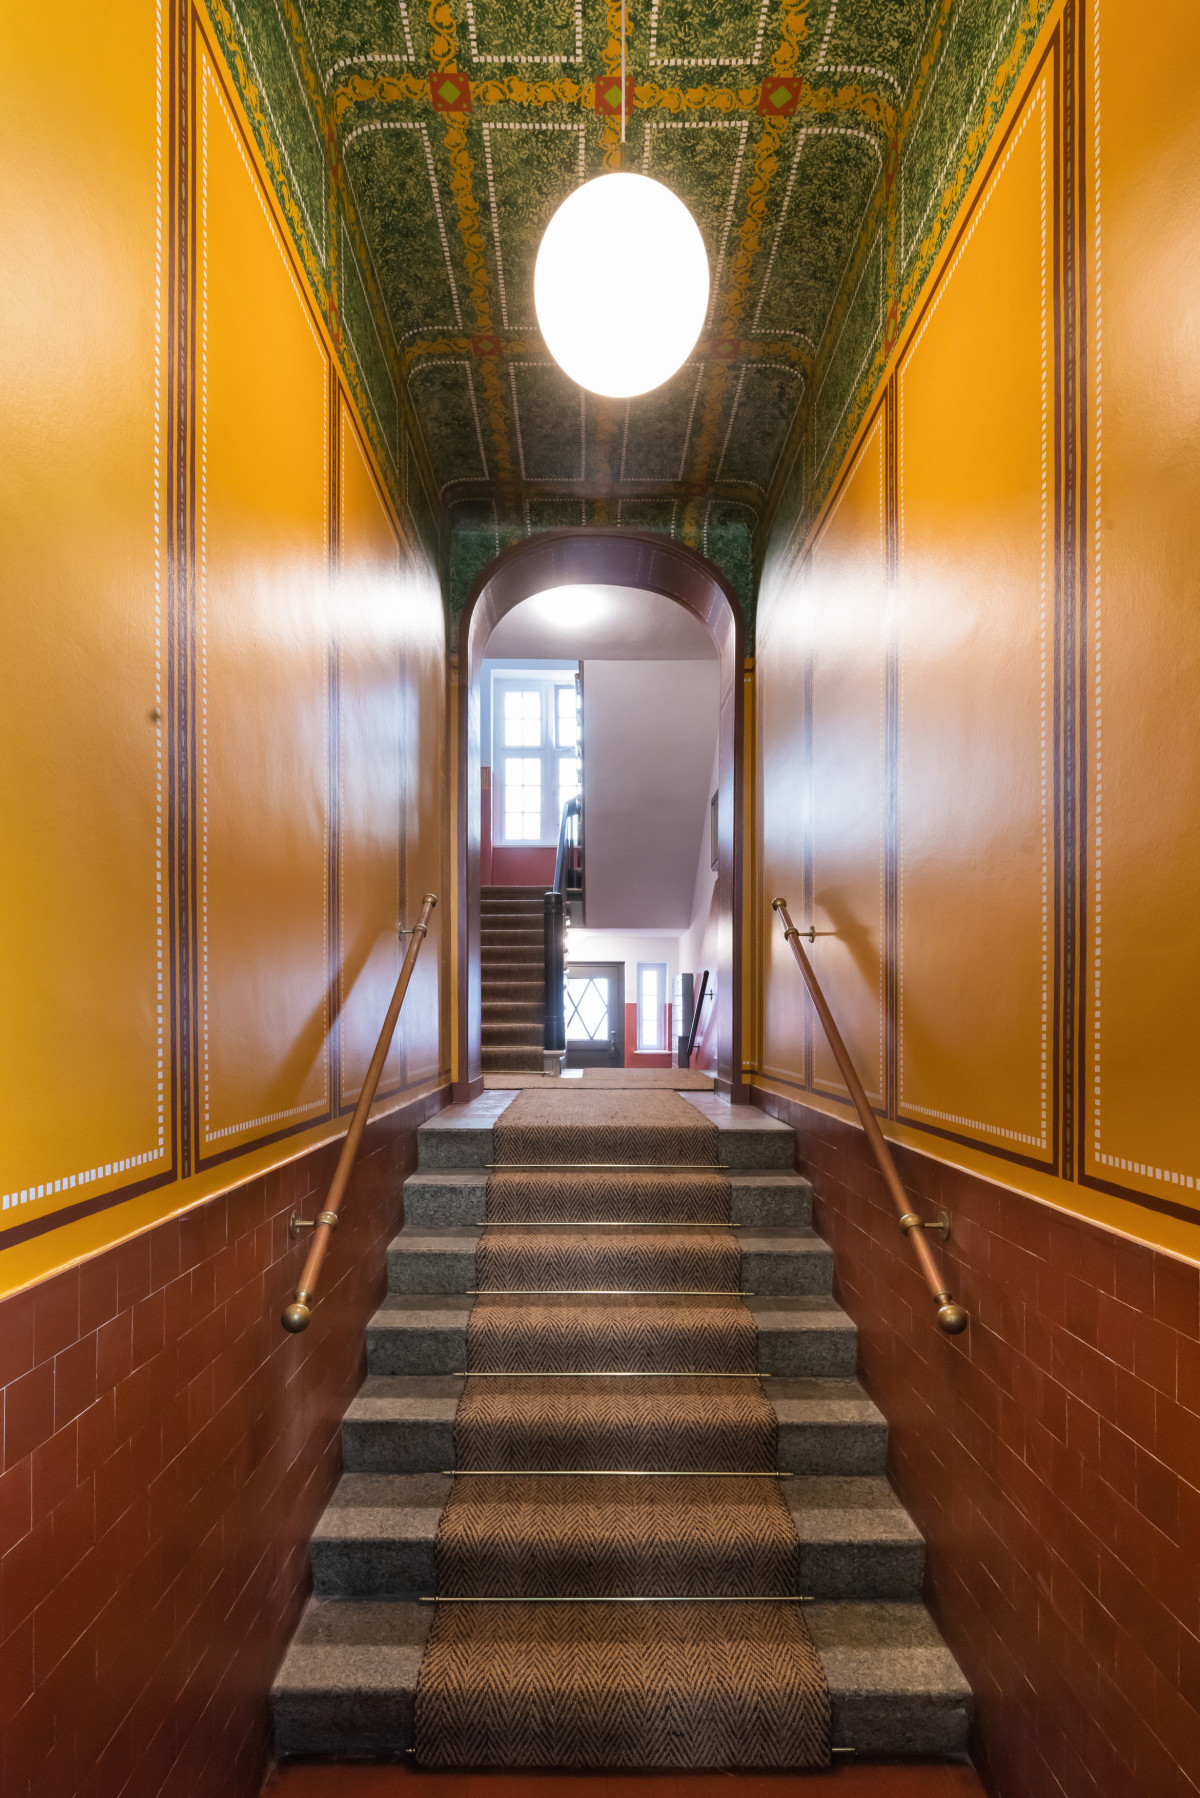 Im Zuge der Sanierung erhielten die Treppenhäuser in der Max-Koska-Straße 8 und 11 in Berlin ihre ursprüngliche, historische Farbgestaltung zurück